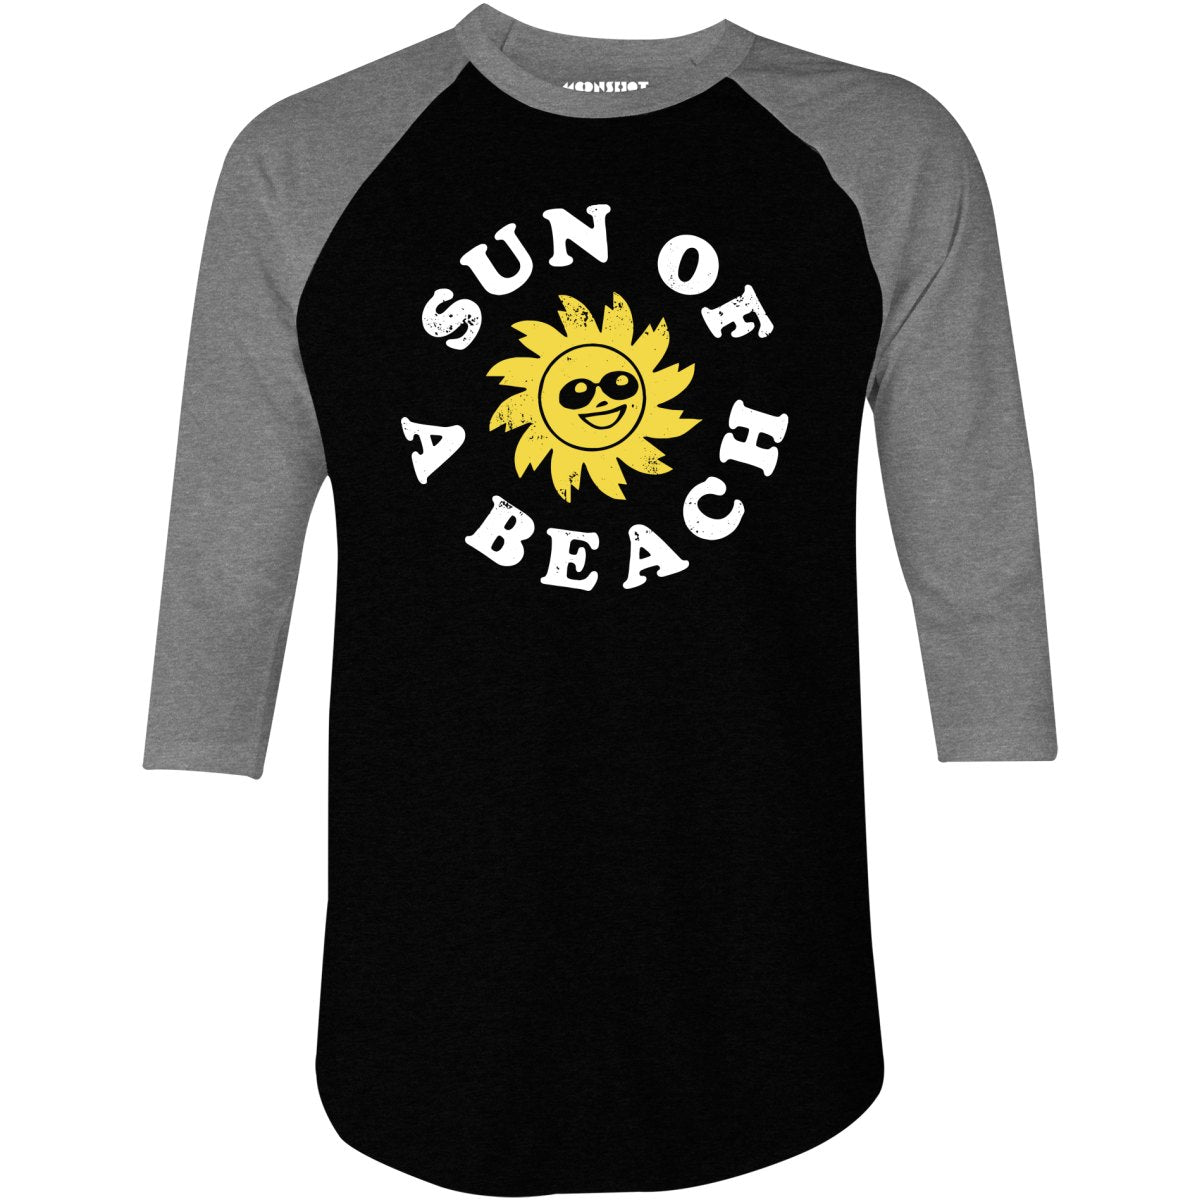 Sun of a Beach - 3/4 Sleeve Raglan T-Shirt